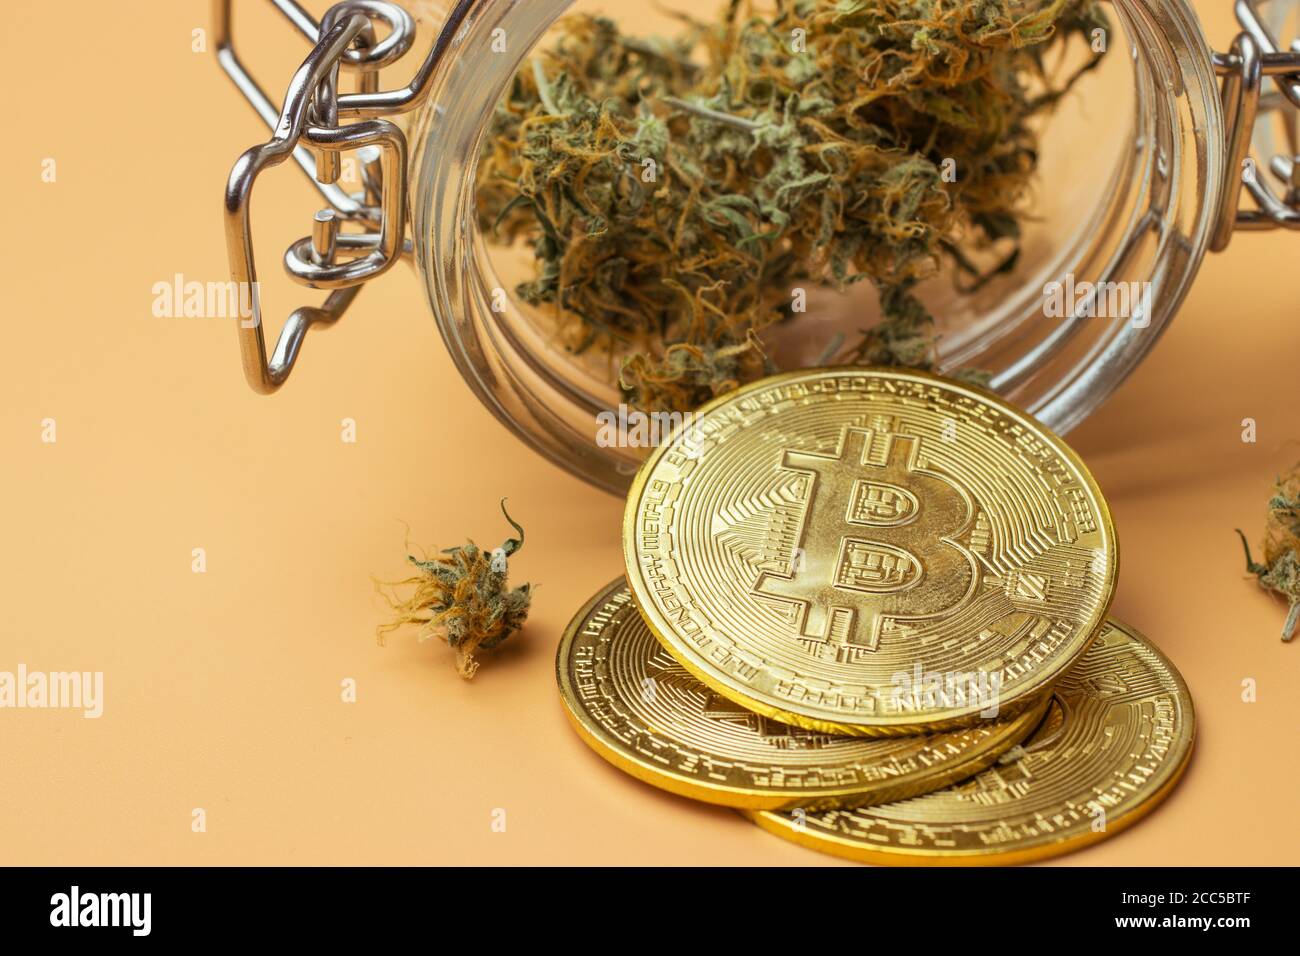 Moneta di Bitcoin accanto alle gemme di cannabis in vaso di vetro, marijuana su sfondo arancione Foto Stock